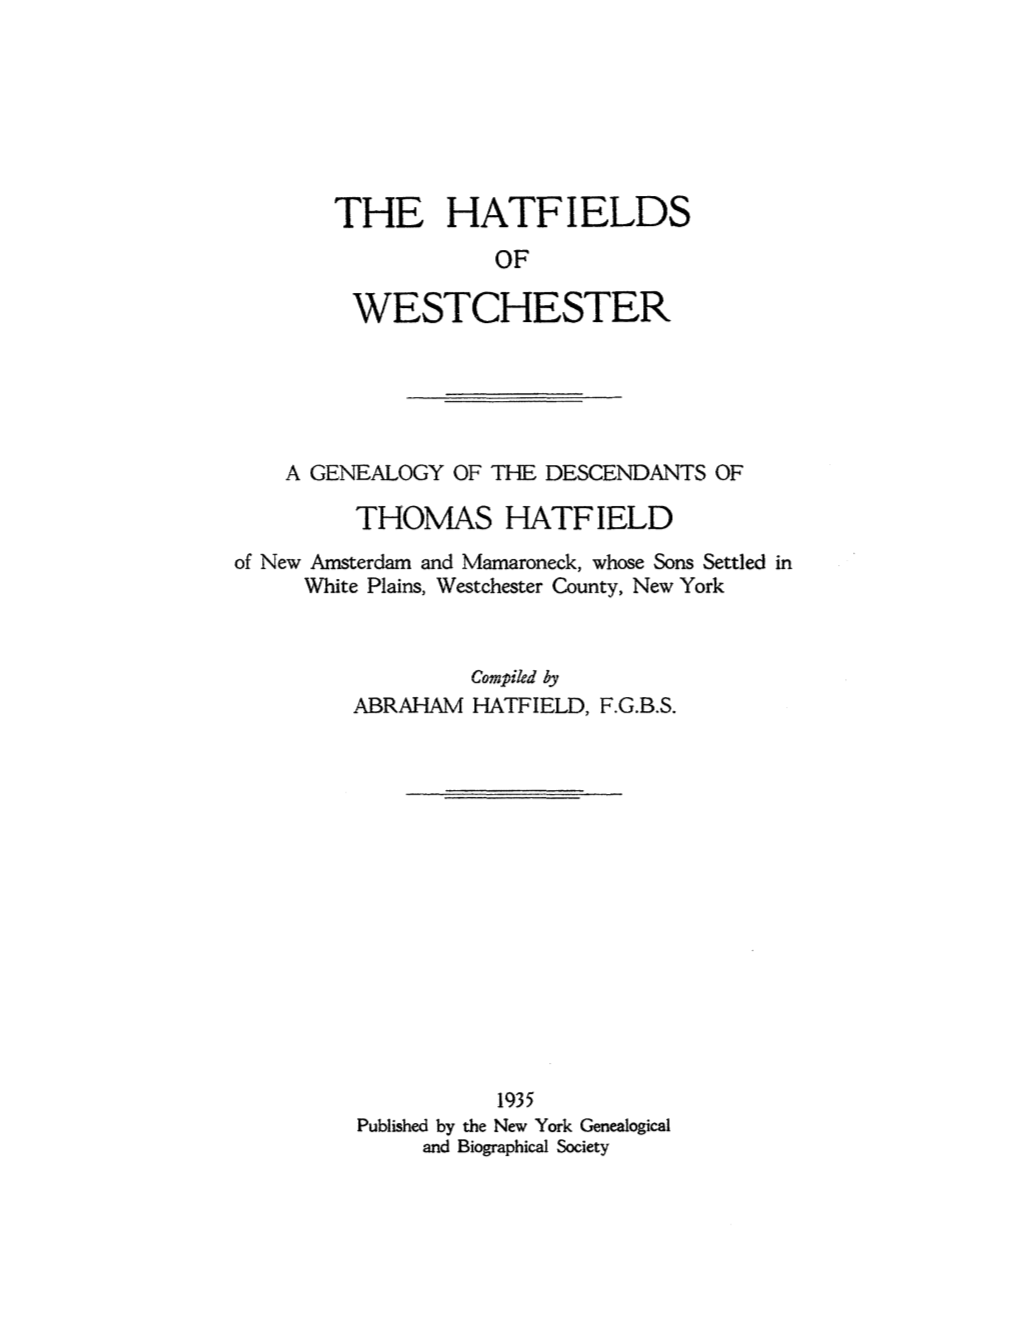 The Hatfields Westchester